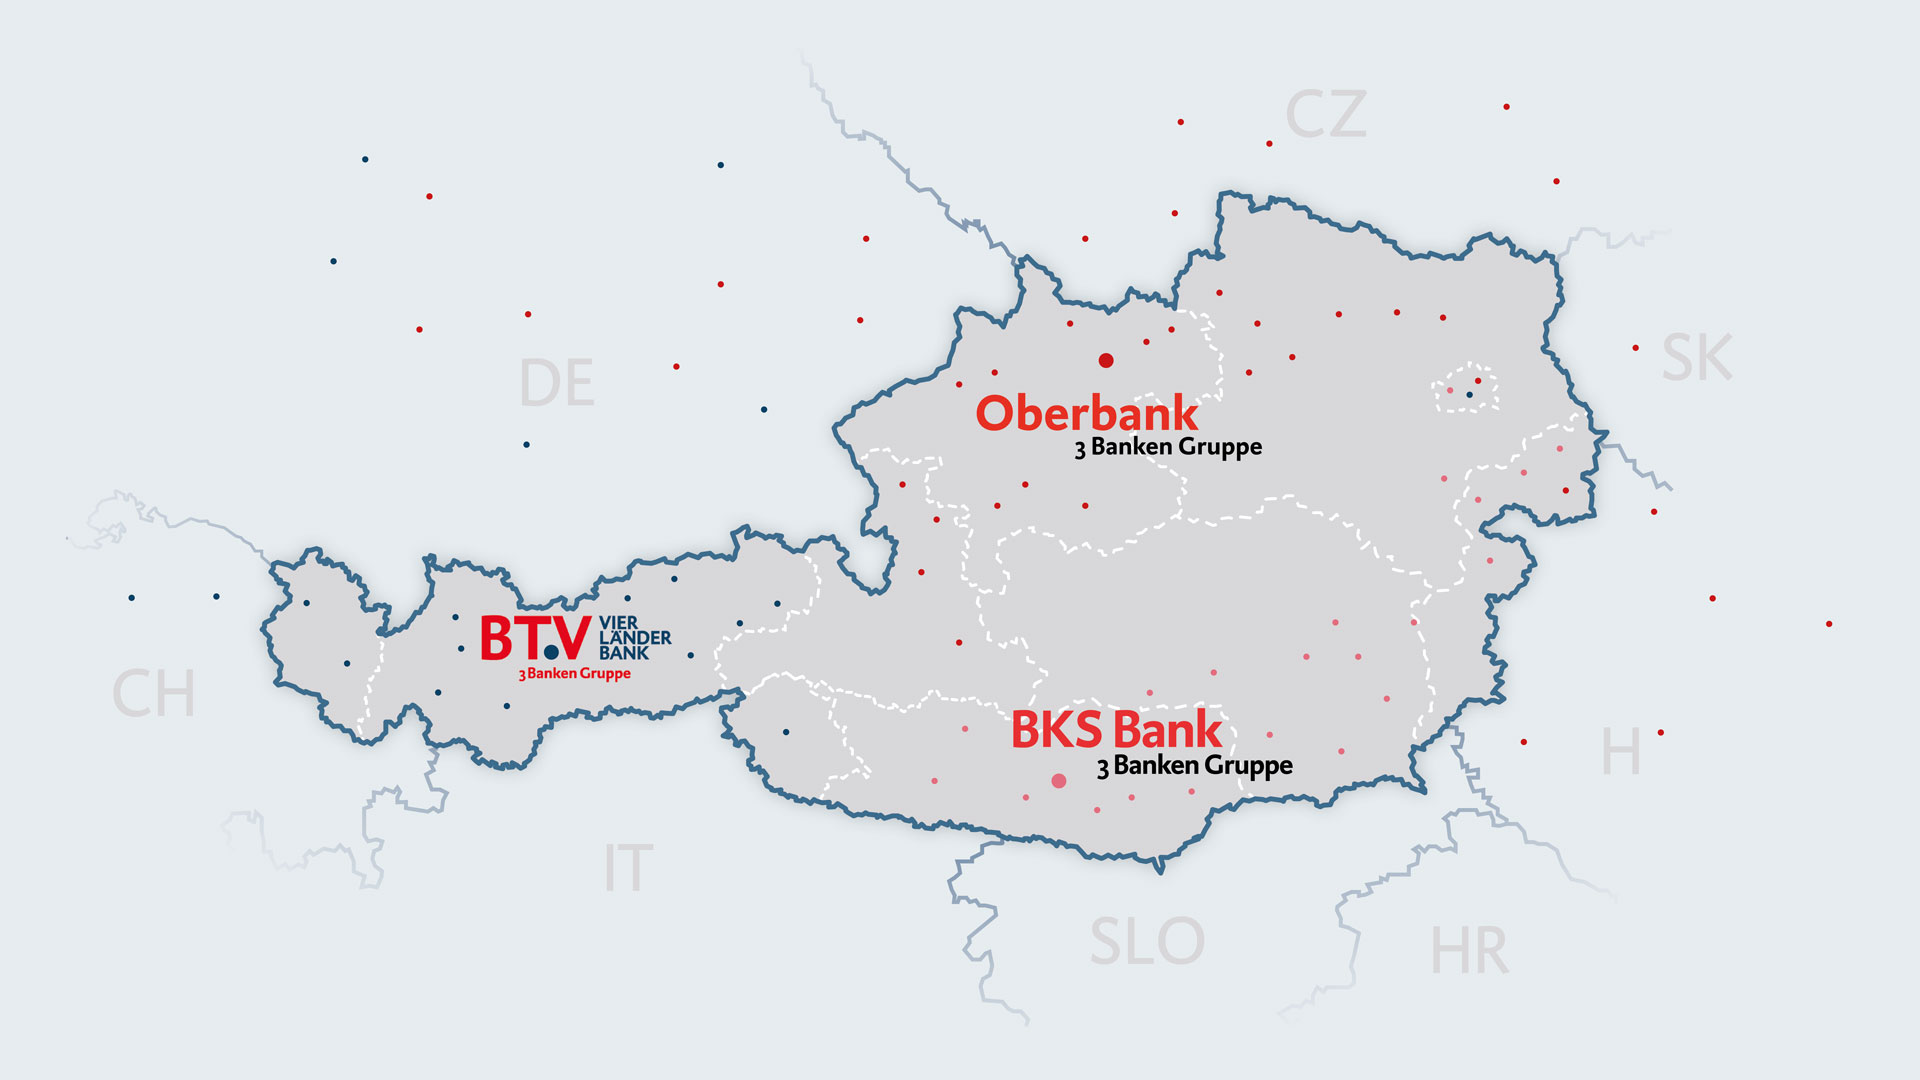 Laendkarte von Österreich mit den Logos der BTV, Oberbank und BKS Bank, um deren Marktgebiet zu visualisieren.